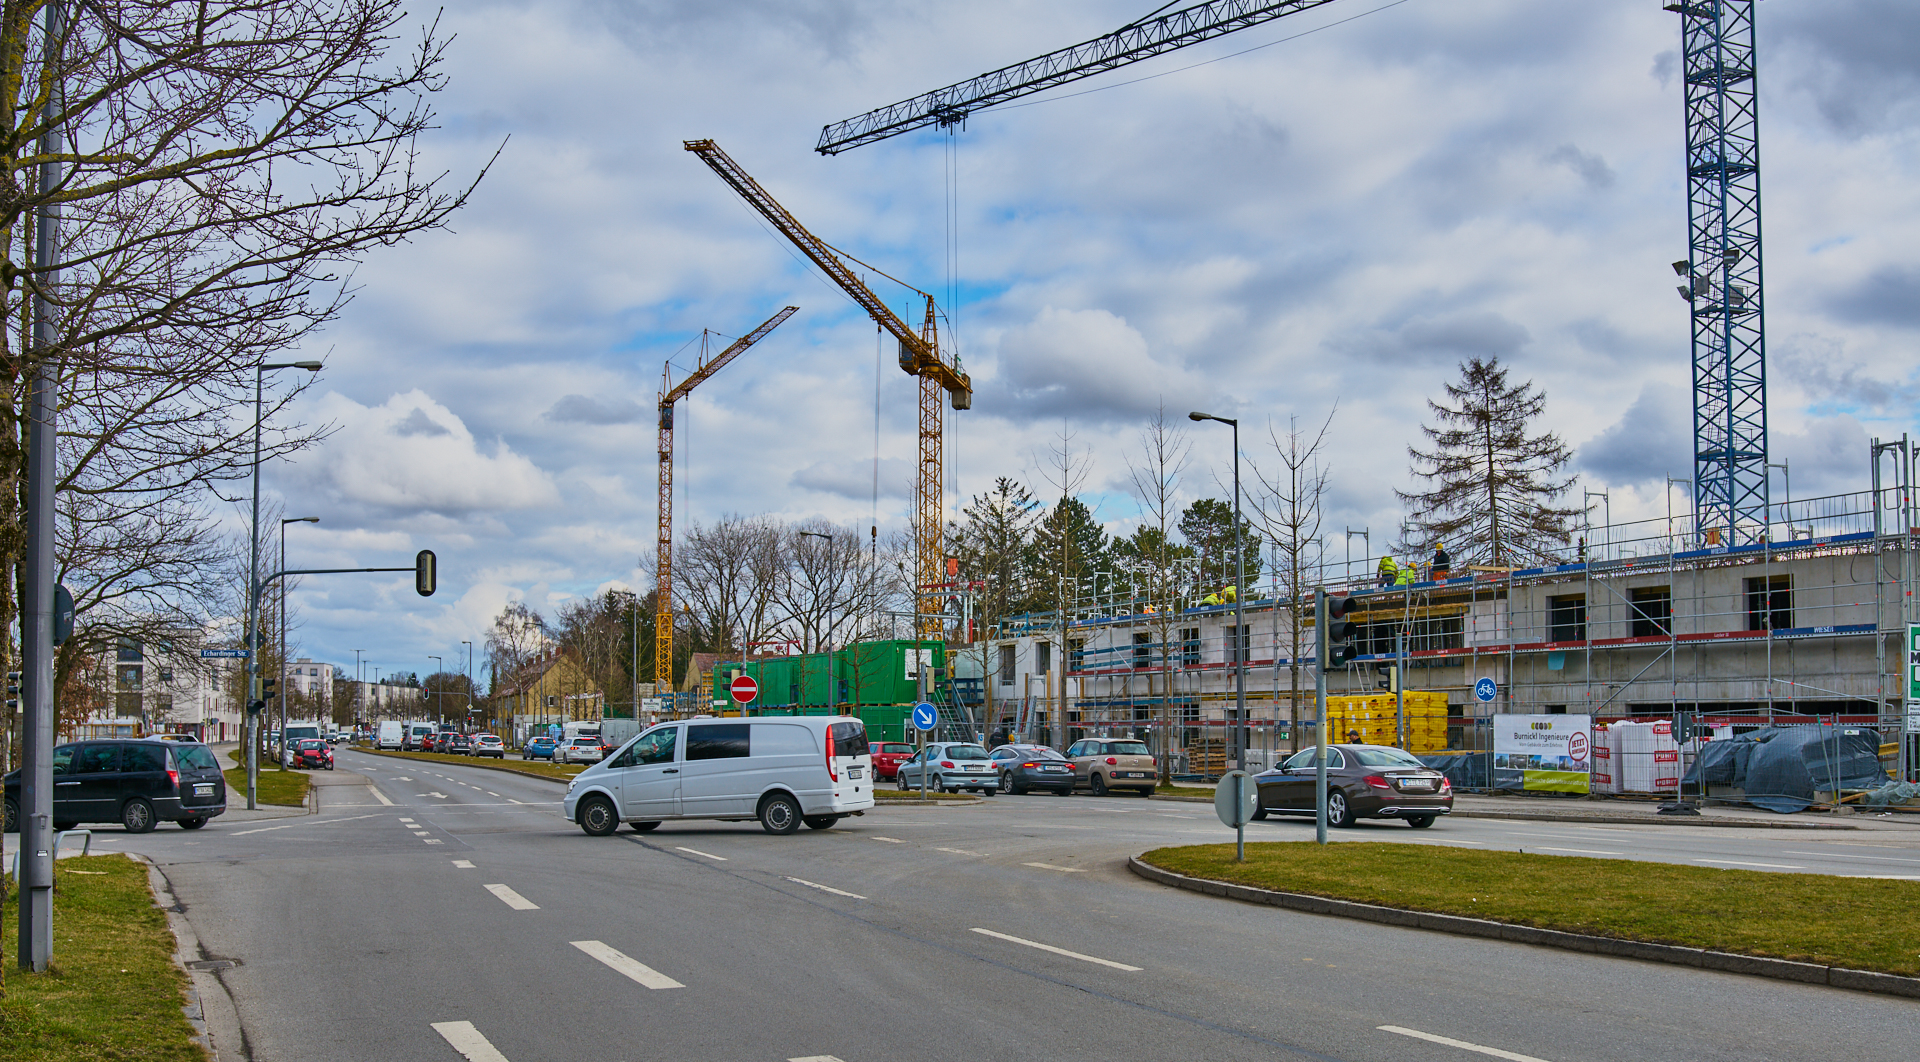 16.03.2018 - Baustelle Maikäfersiedlung in der Bad-Schachener-Straße in Neuperlach